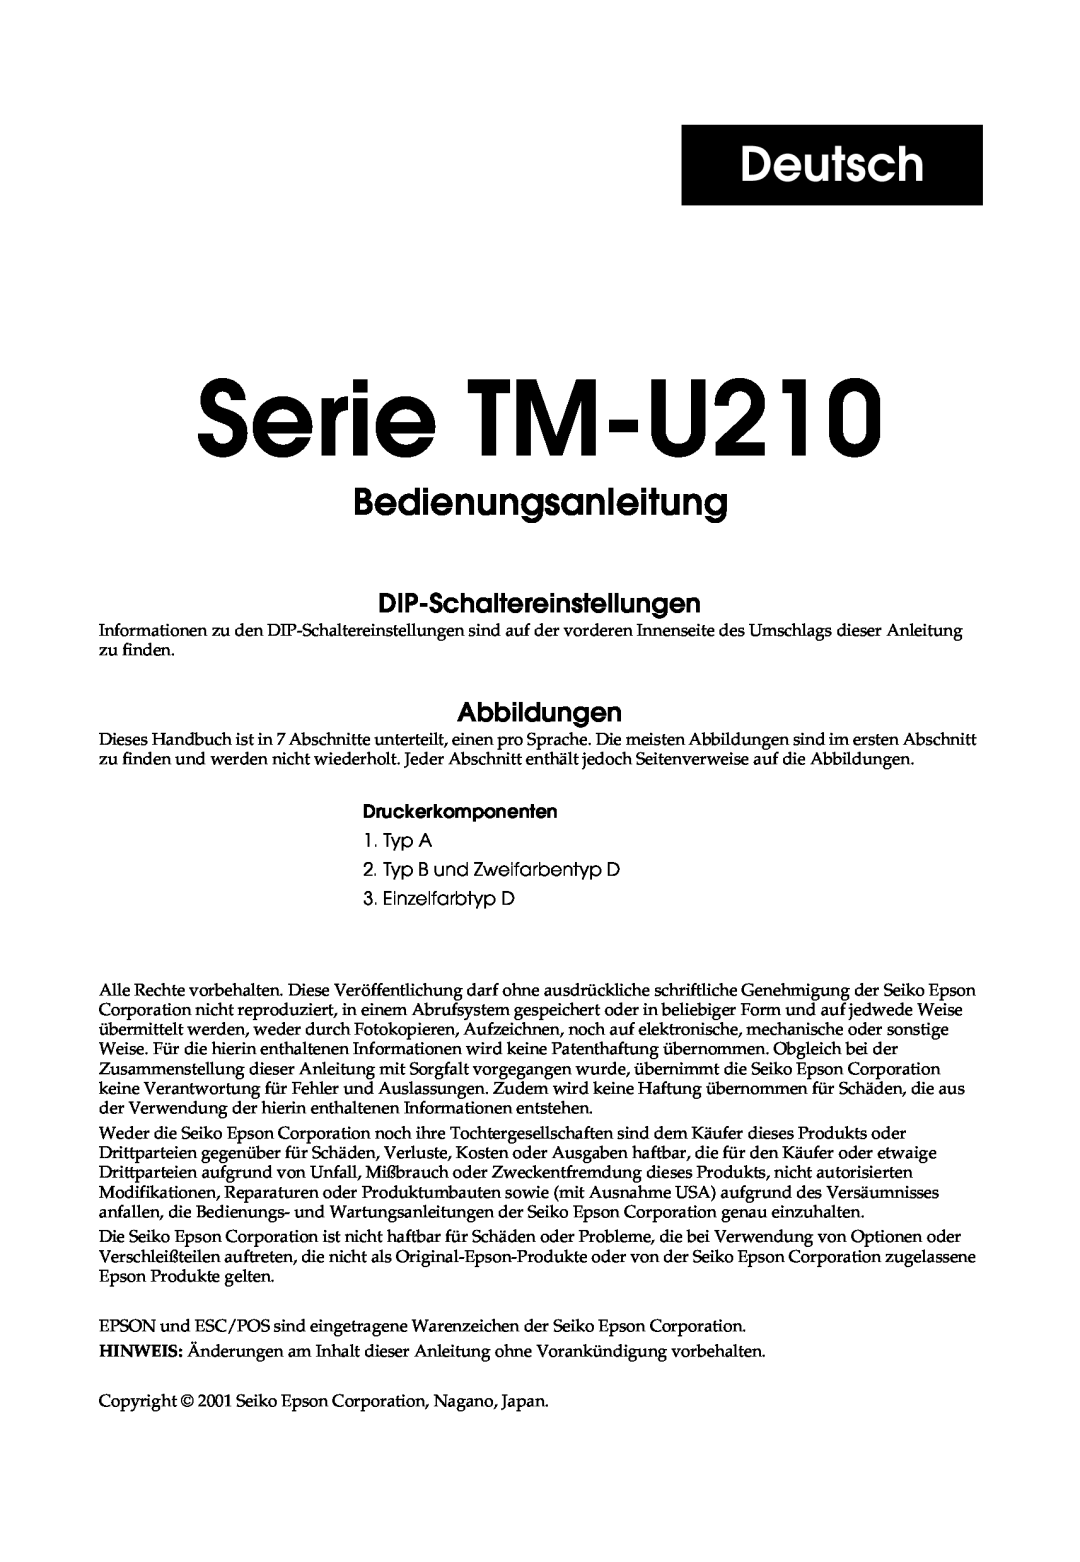 Epson TM-U210B, M119B, M119D, M119A Serie TM-U210, Deutsch, Bedienungsanleitung, DIP-Schaltereinstellungen, Abbildungen 